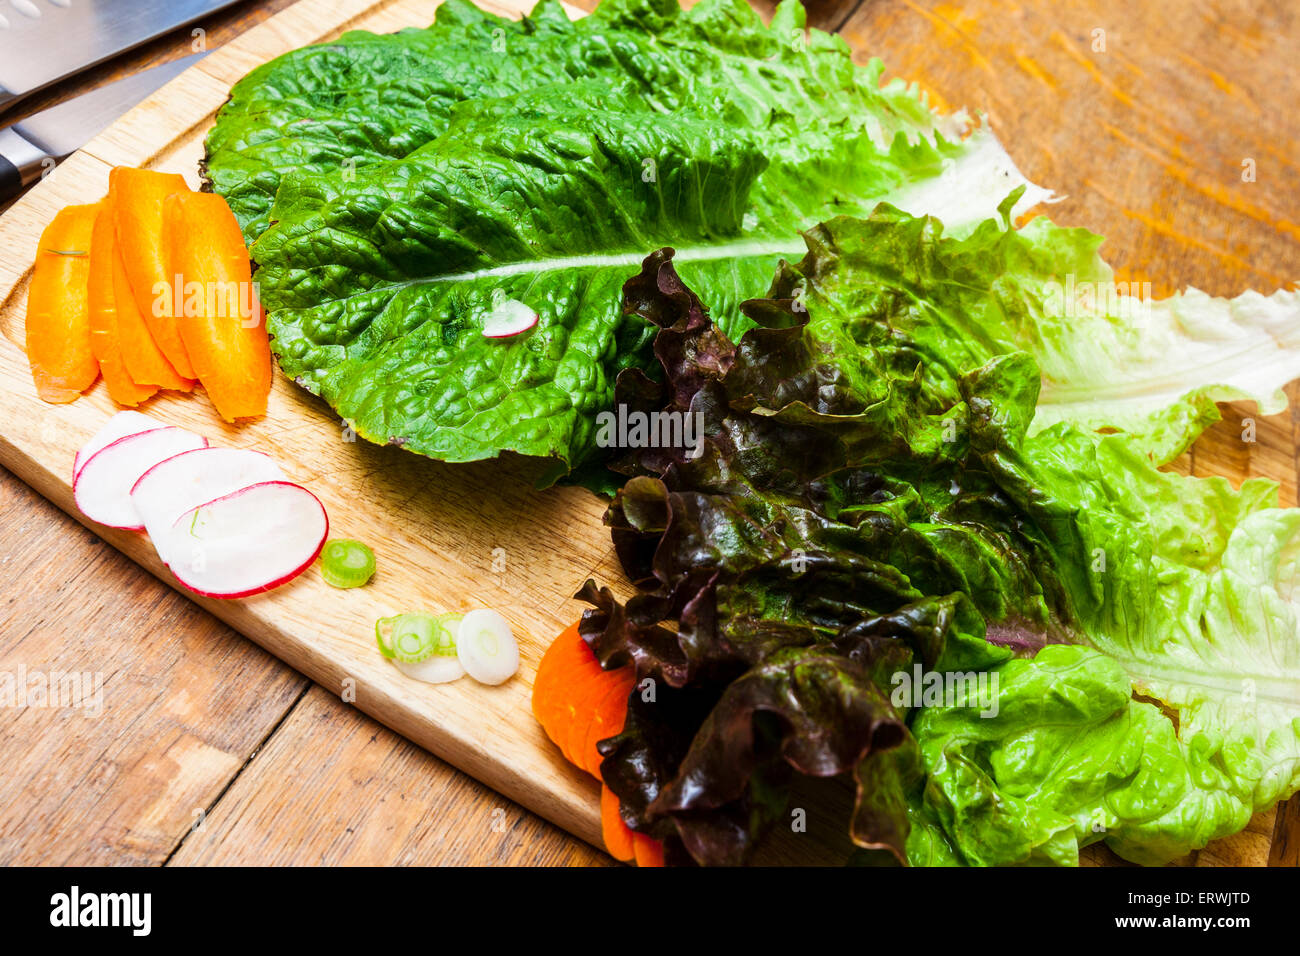 Ingredienti per insalata, Romaine e lattuga rossa con le carote affettate, ravanelli e cipollotti su un tagliere Foto Stock